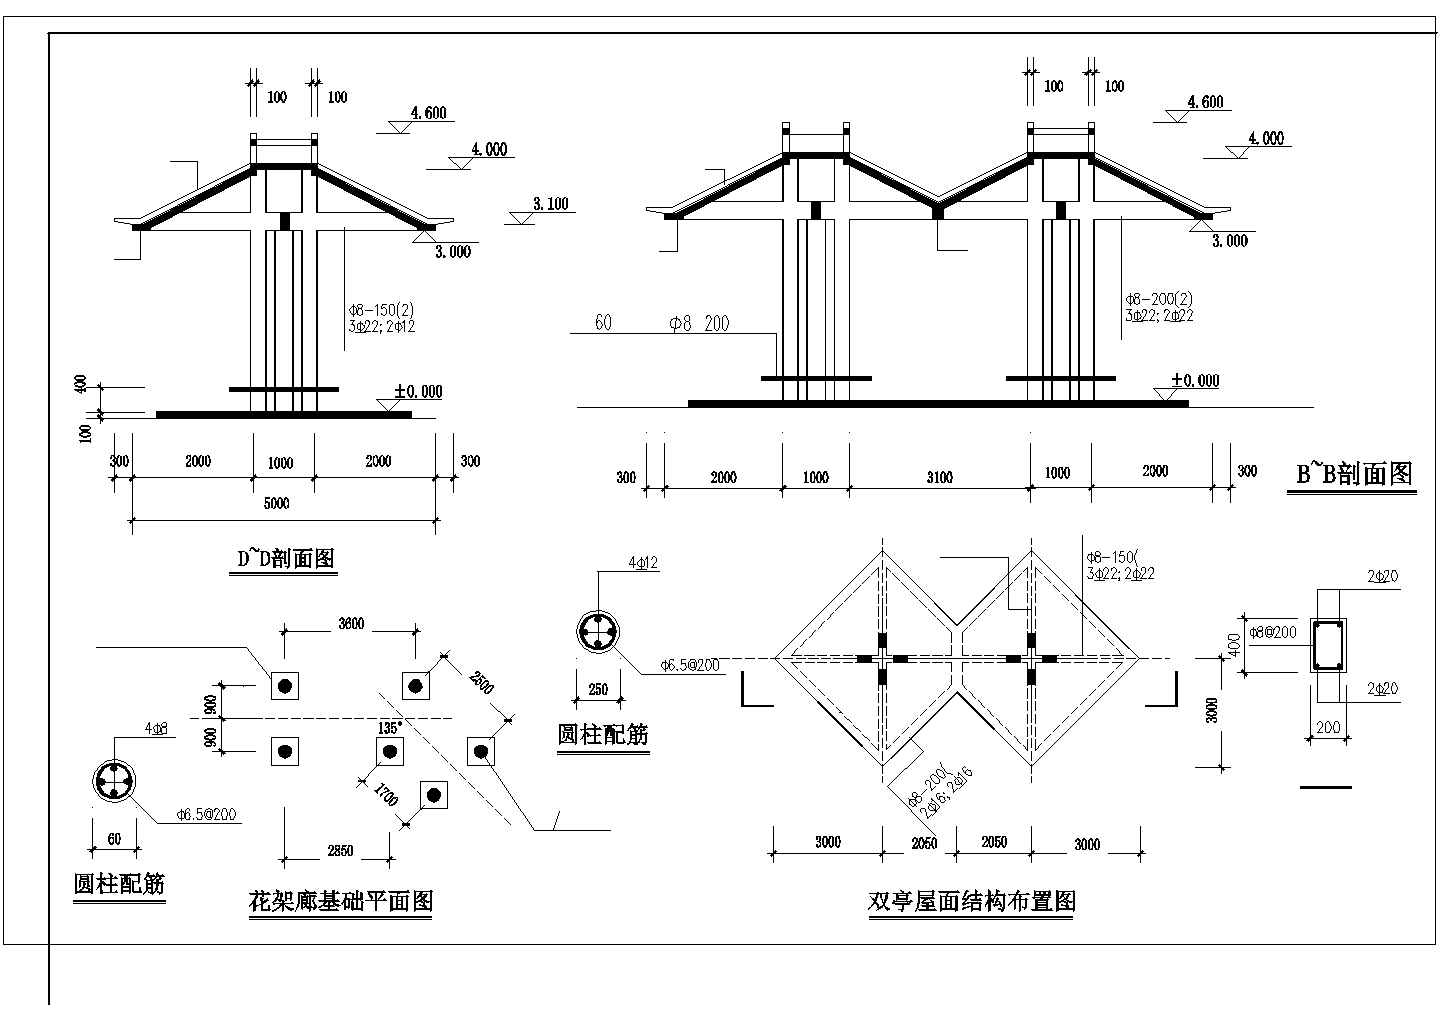 CAD景观设计施工图--亭桥花架廊详图